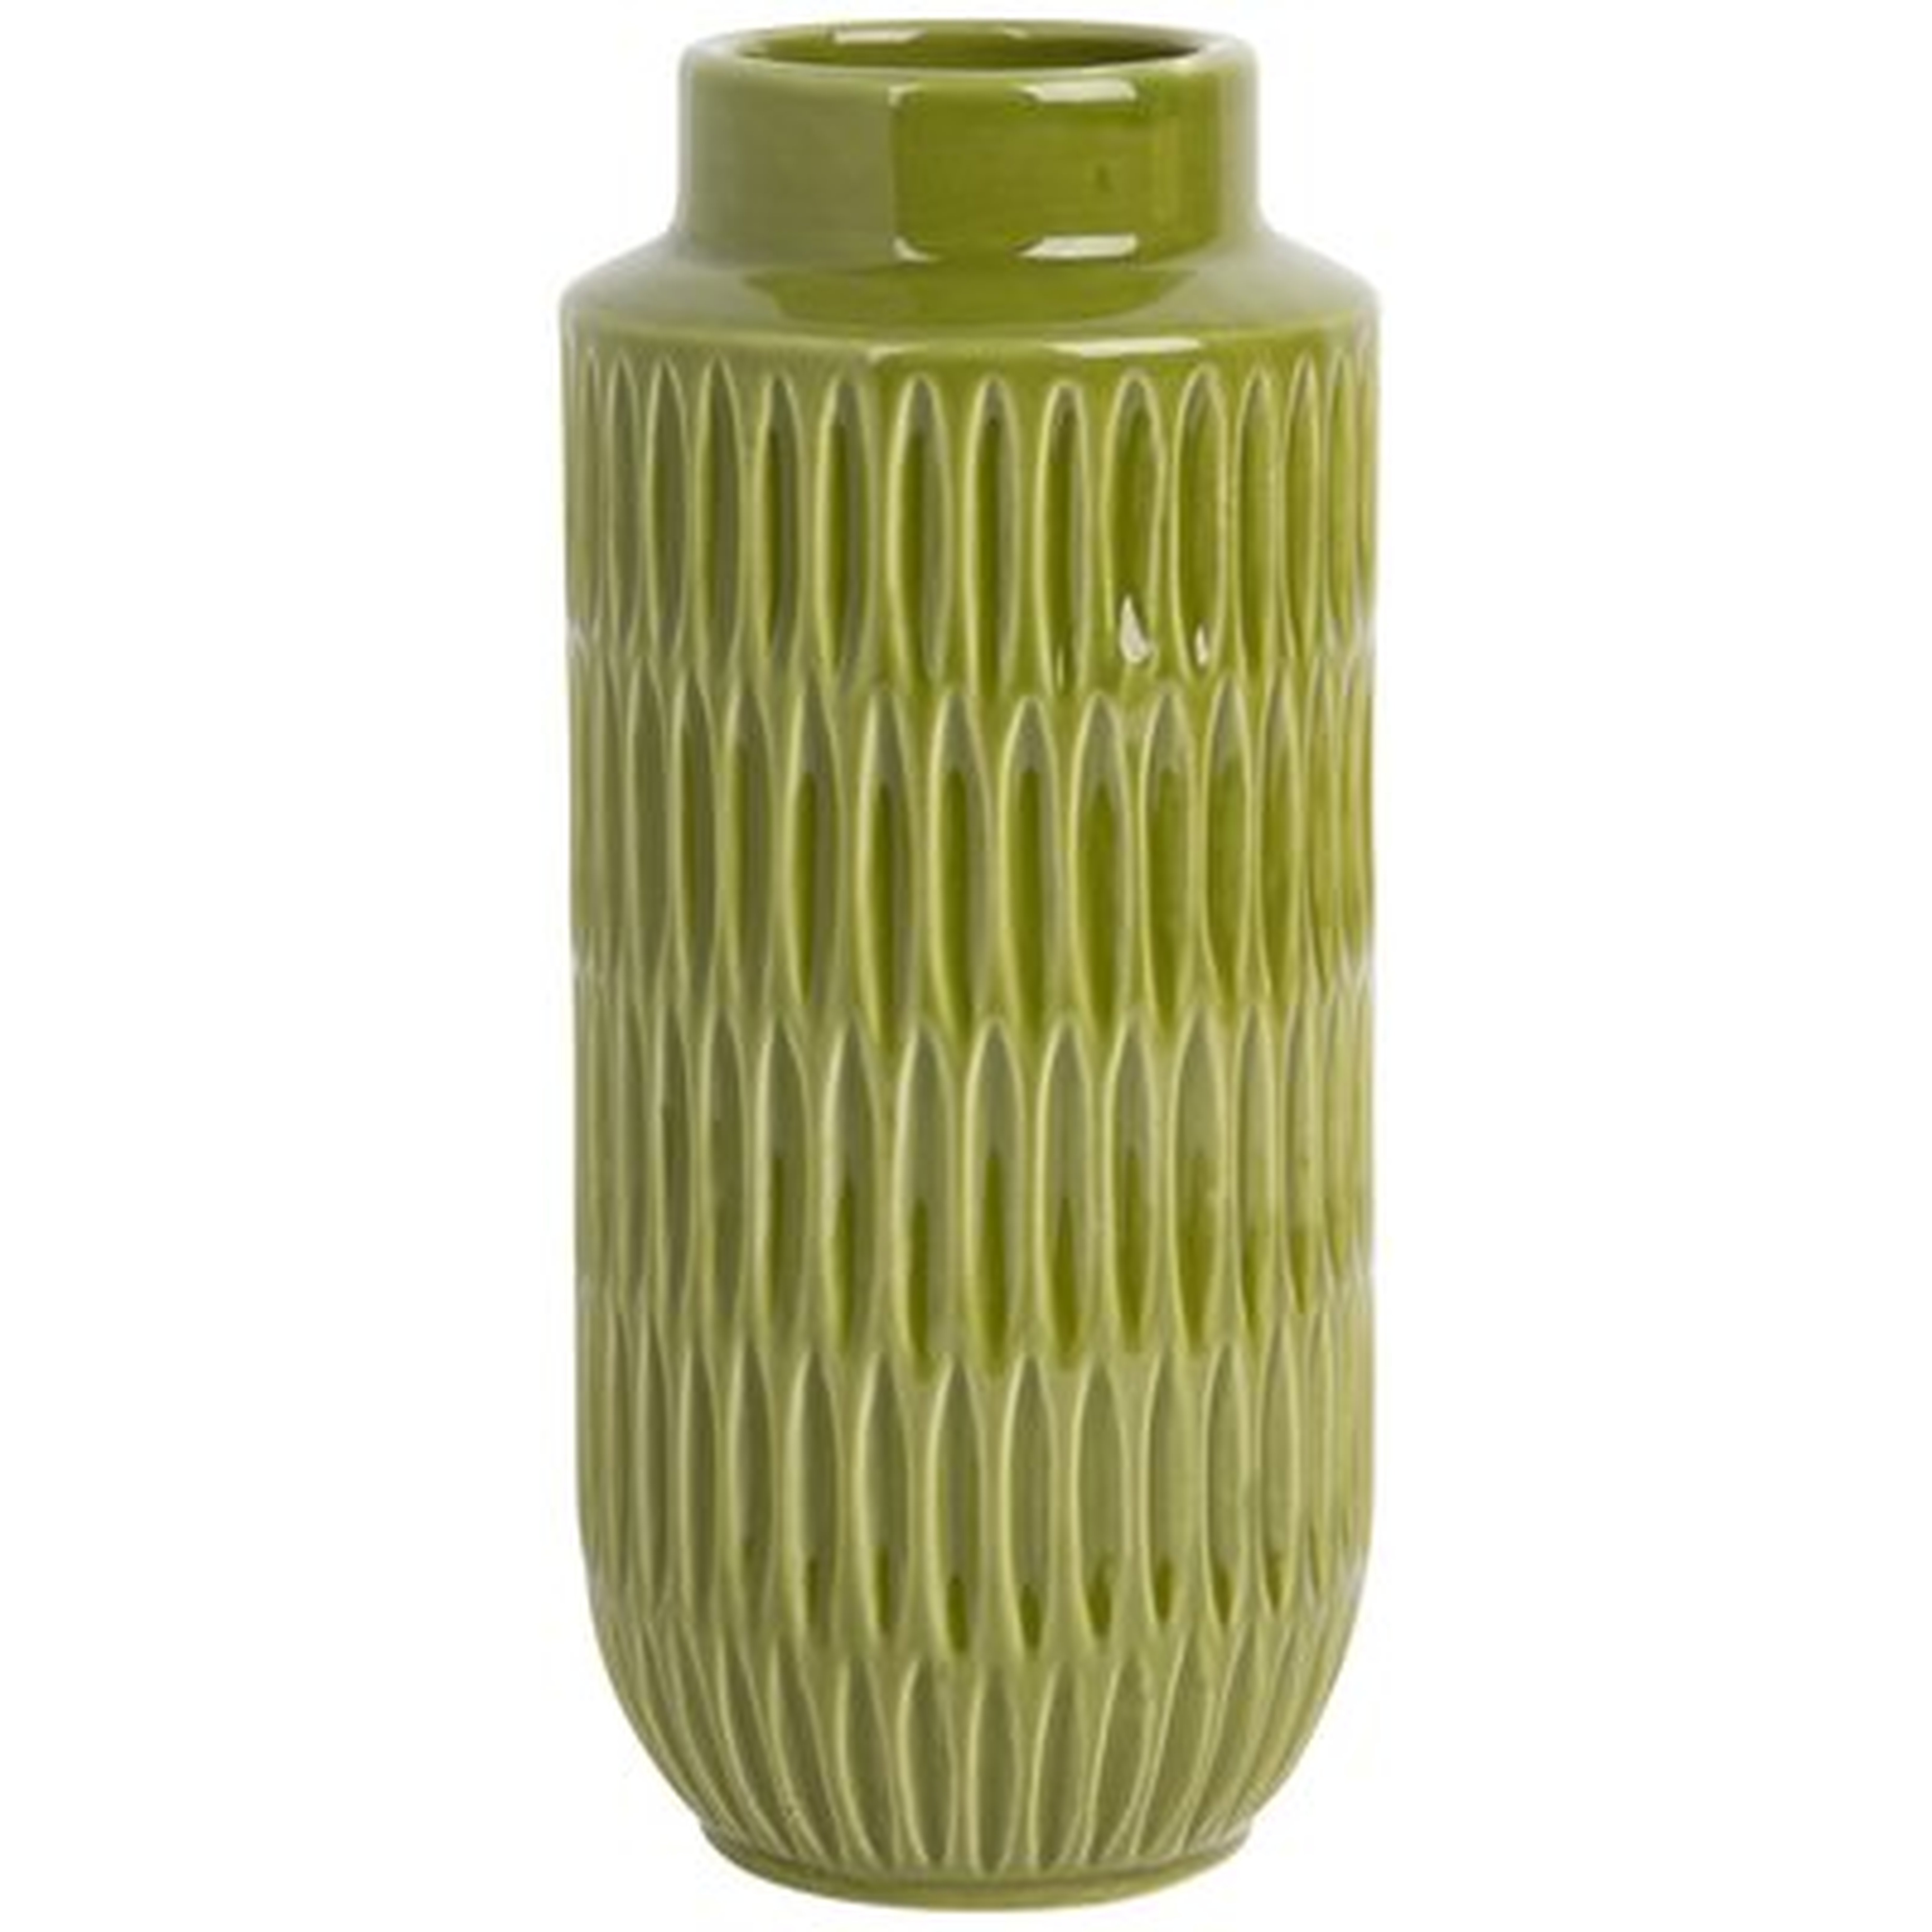 8"H Textured Vase - Wayfair